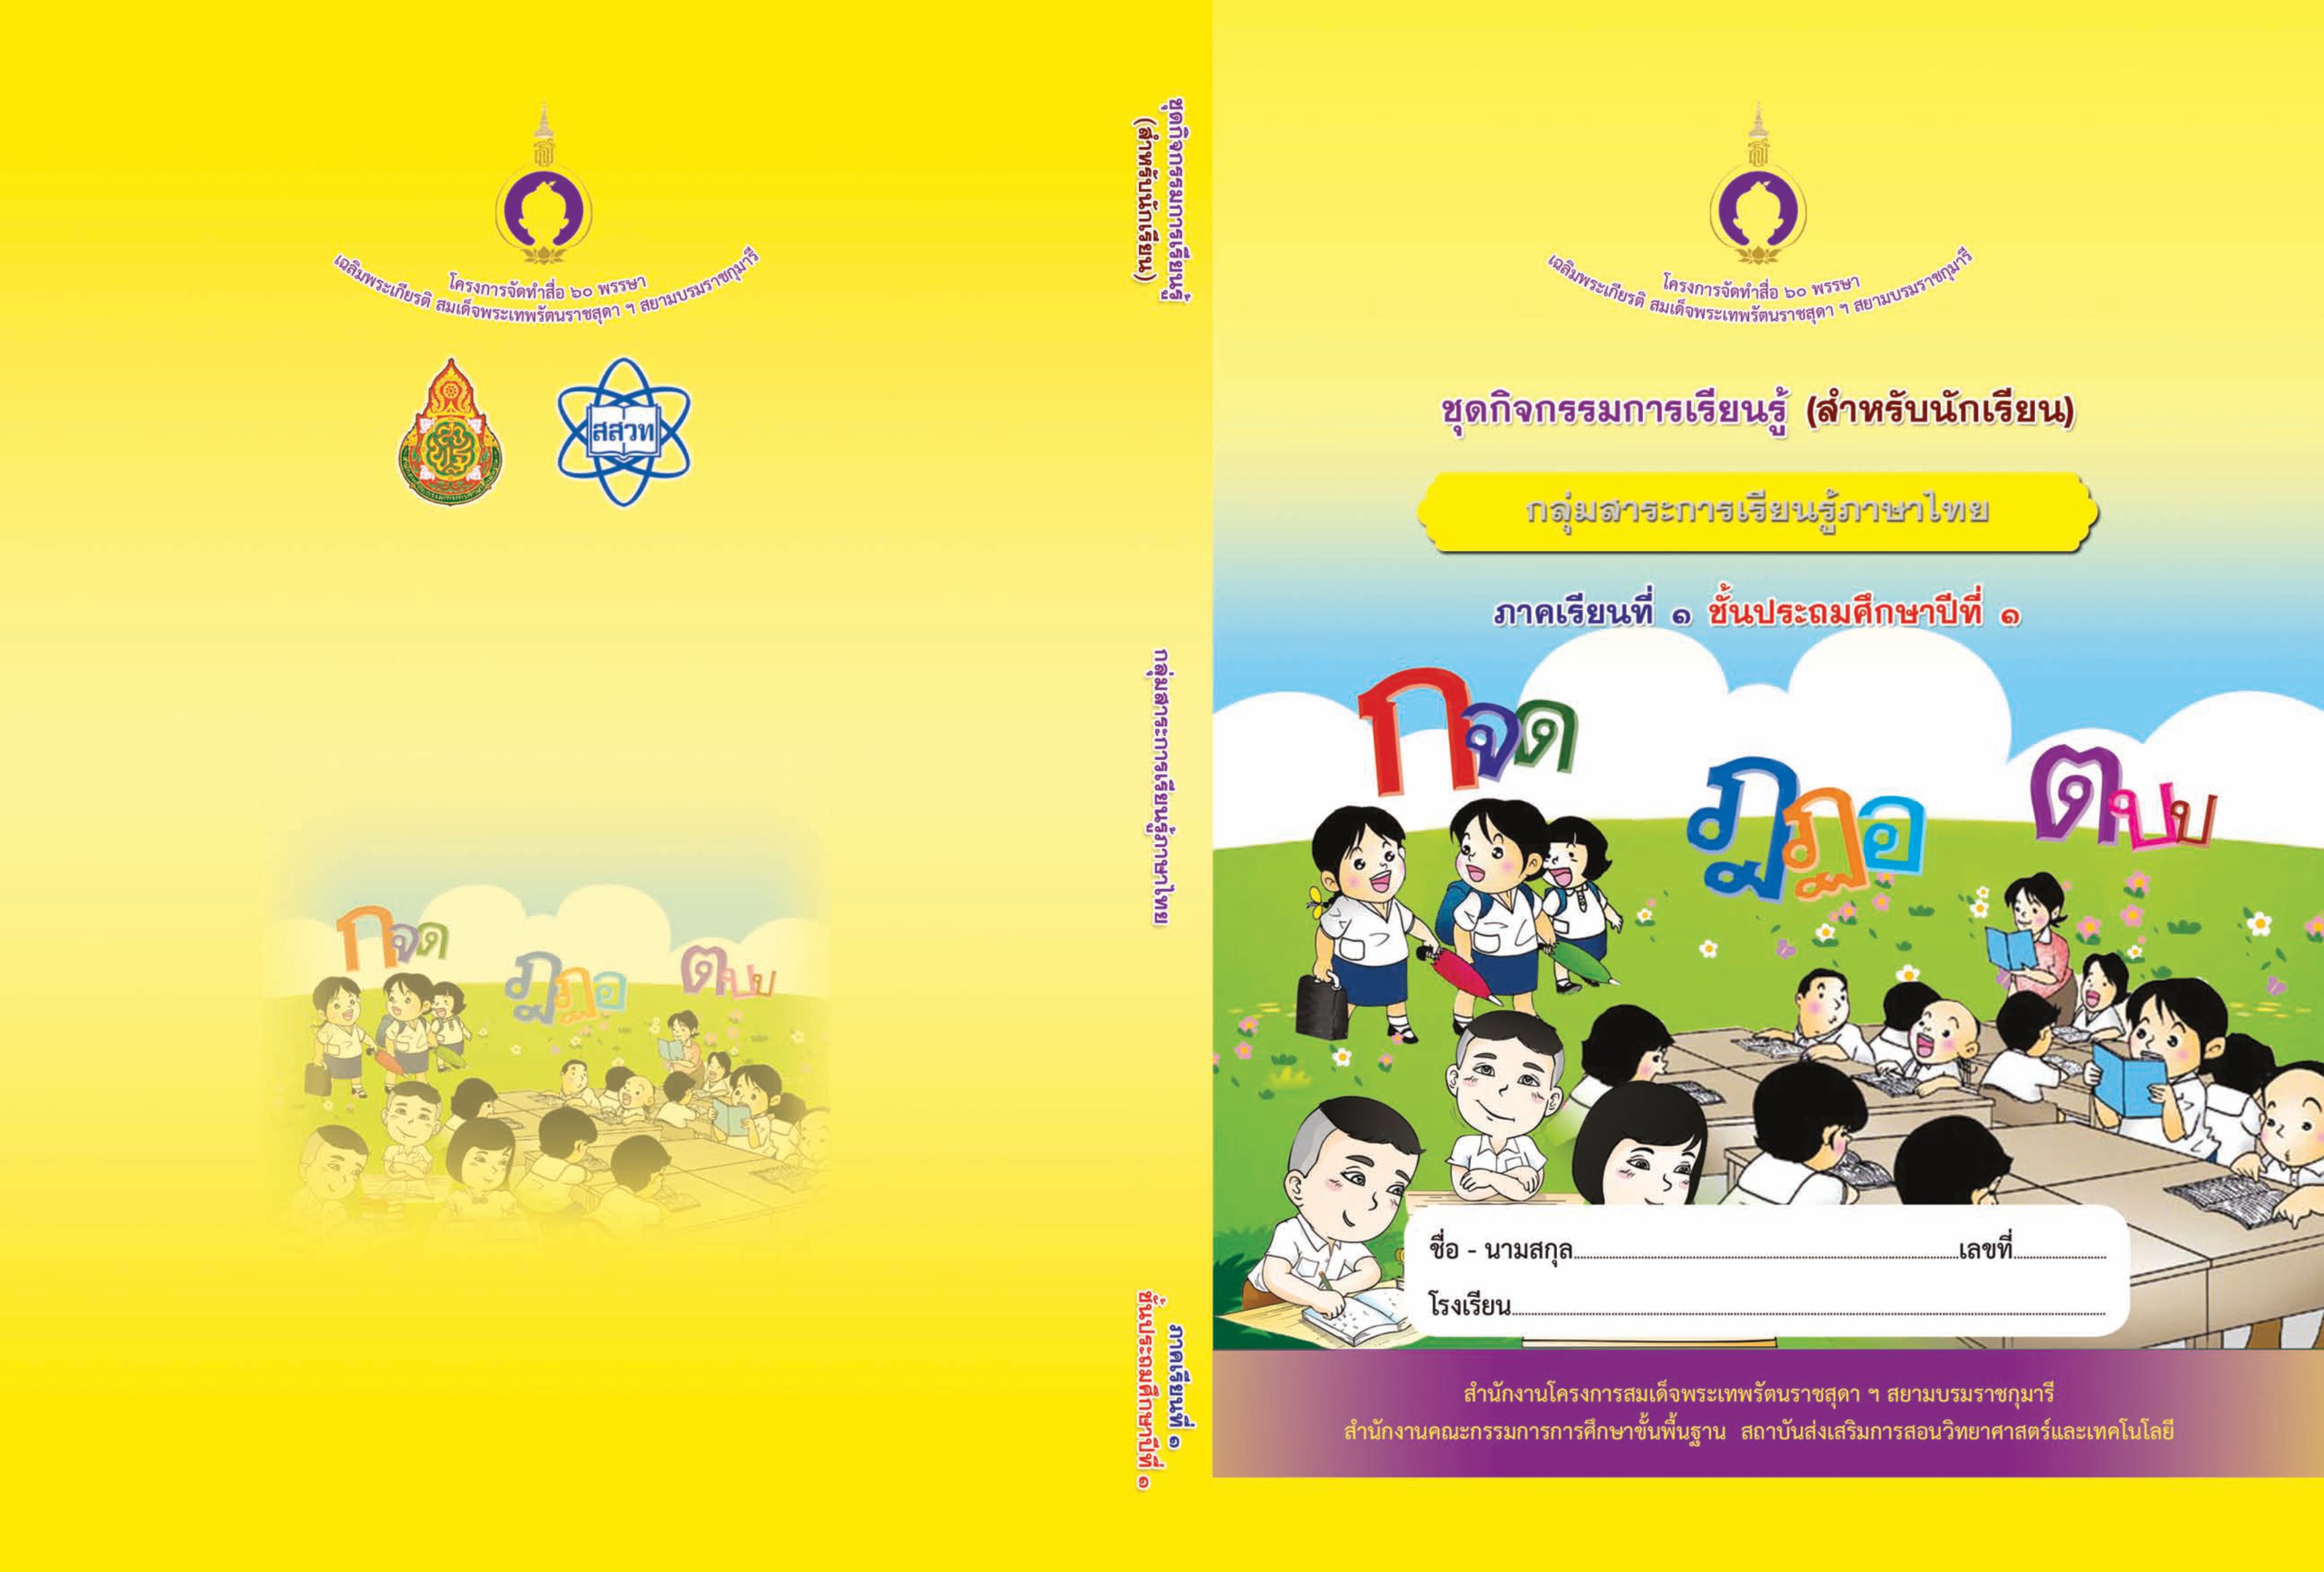 ภาพประกอบไอเดีย รวมใบงาน ชุดกิจกรรมการเรียนรู้ภาษาไทย ระดับชั้น ป.1 ไฟล์ภาพ 